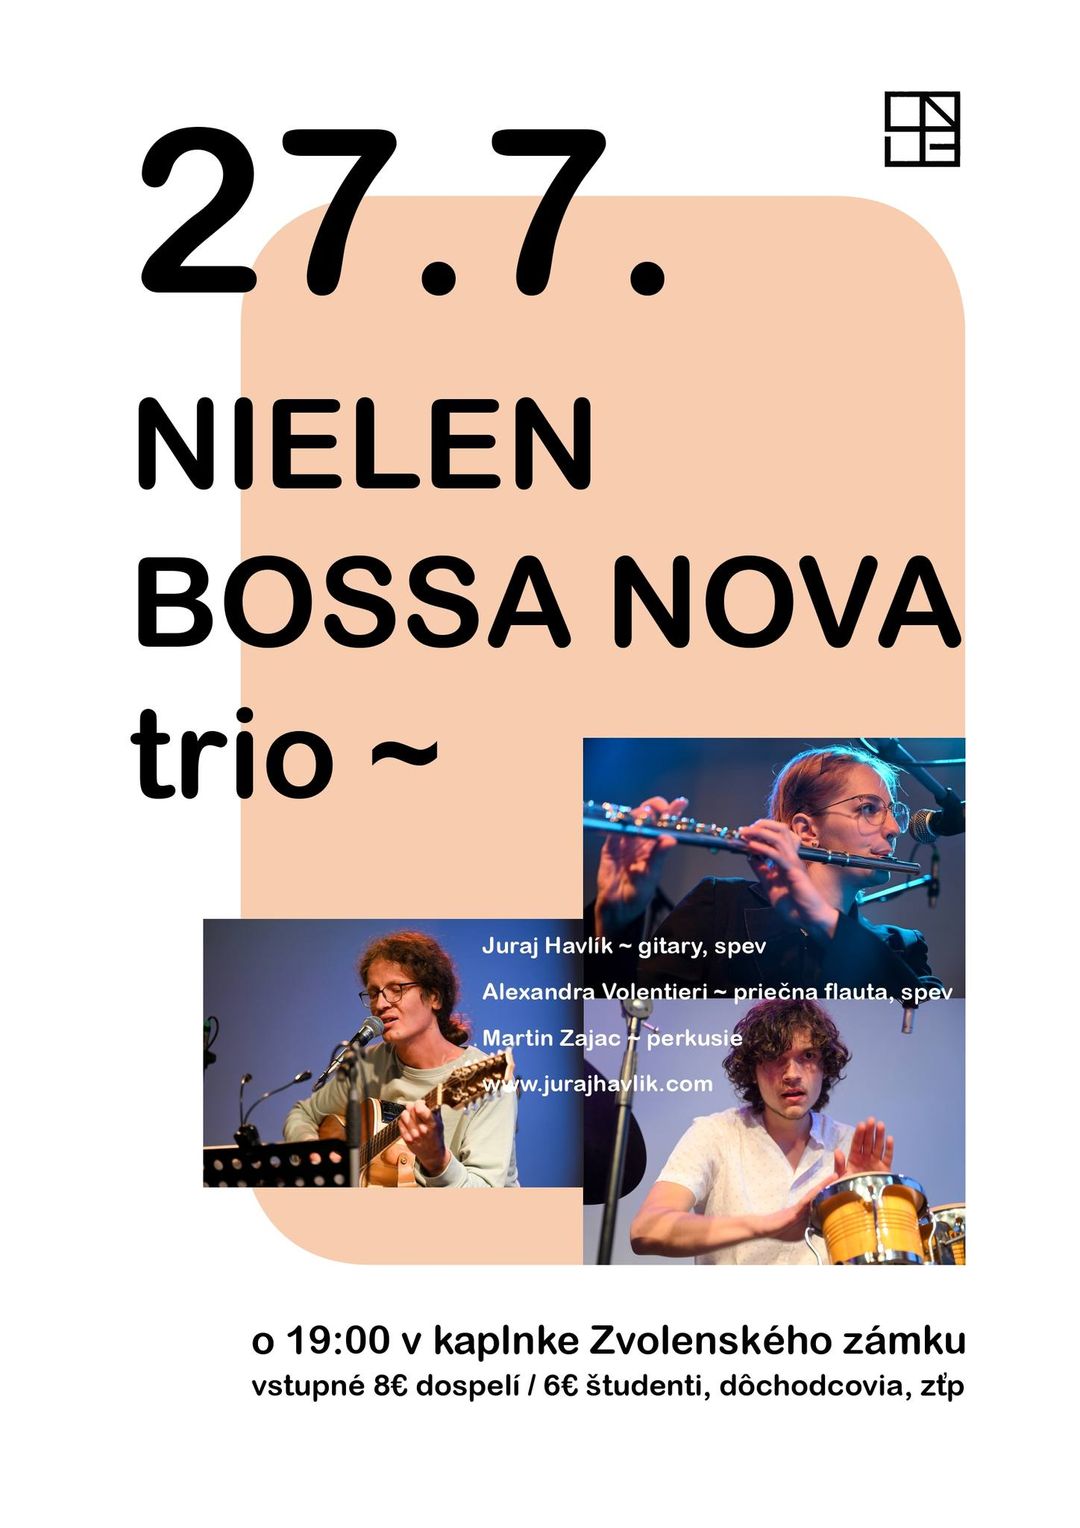 NIELEN BOSSA NOVA trio v kaplnke Zvolenského zámku SNG SNG Zvolenský zámok